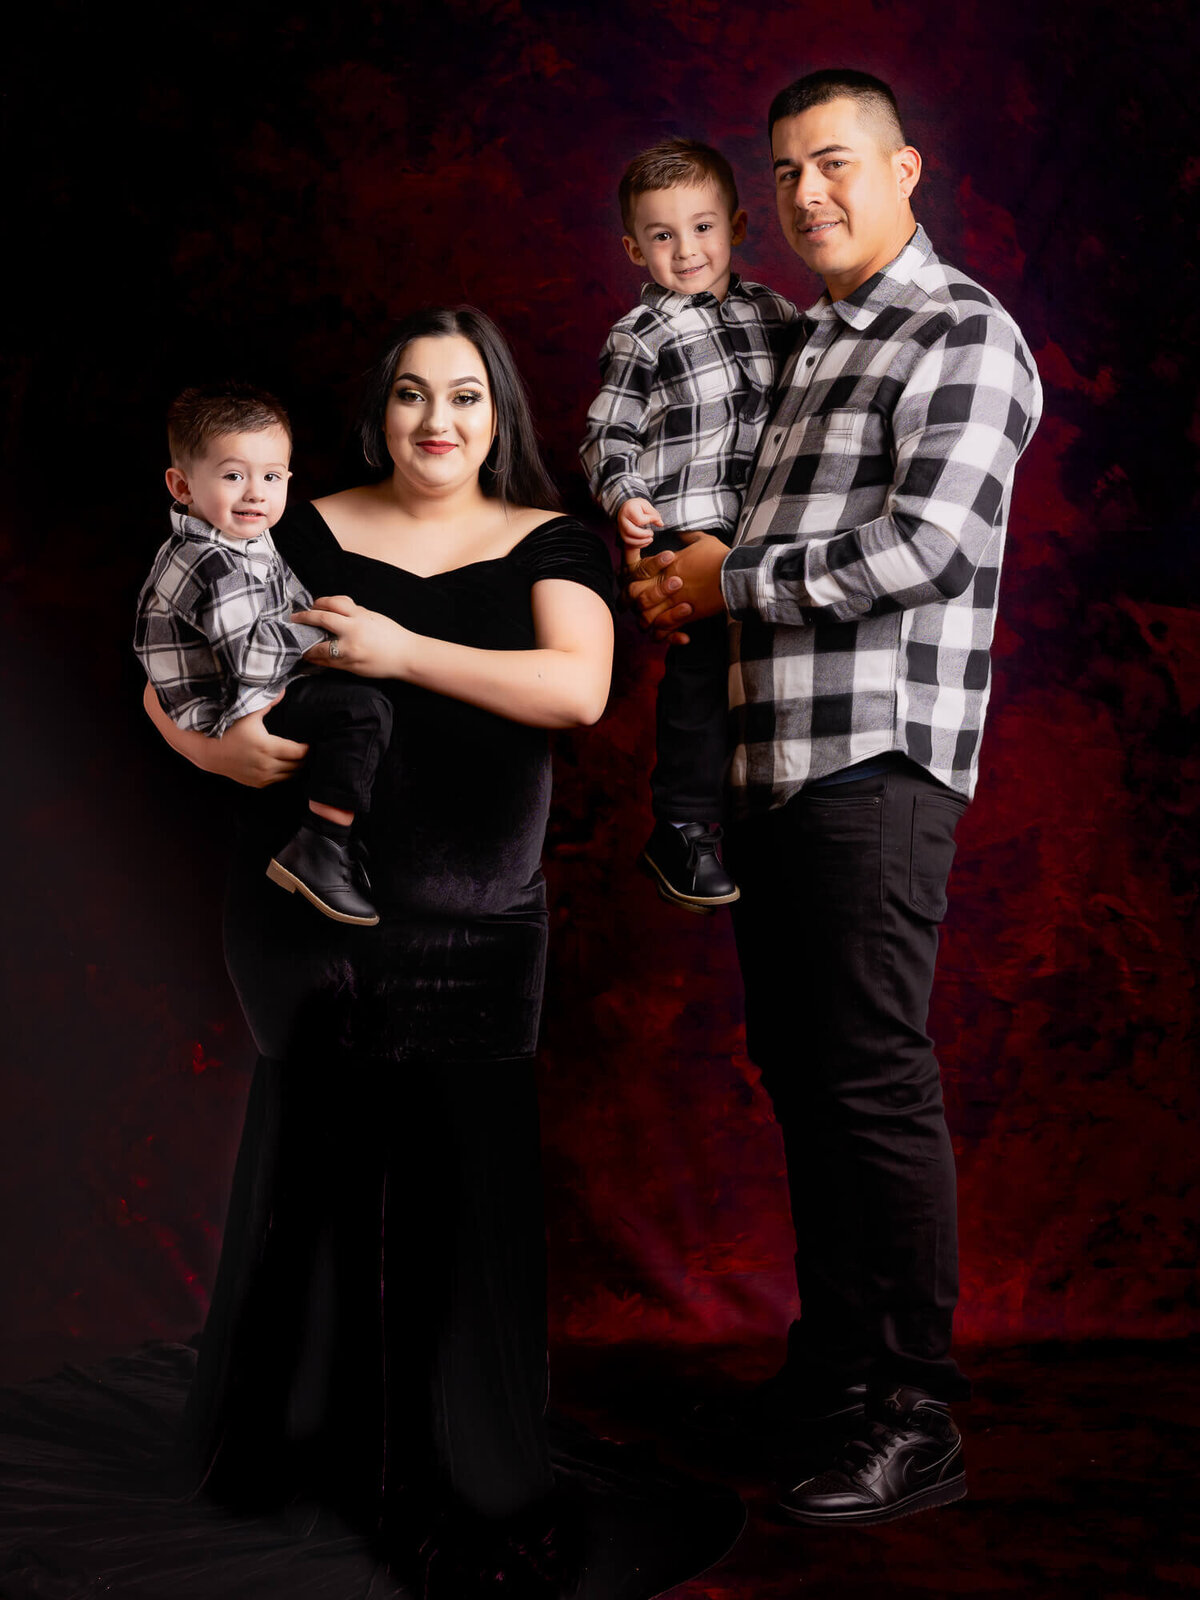 Family dresses up with boys for elegant Prescott family photos